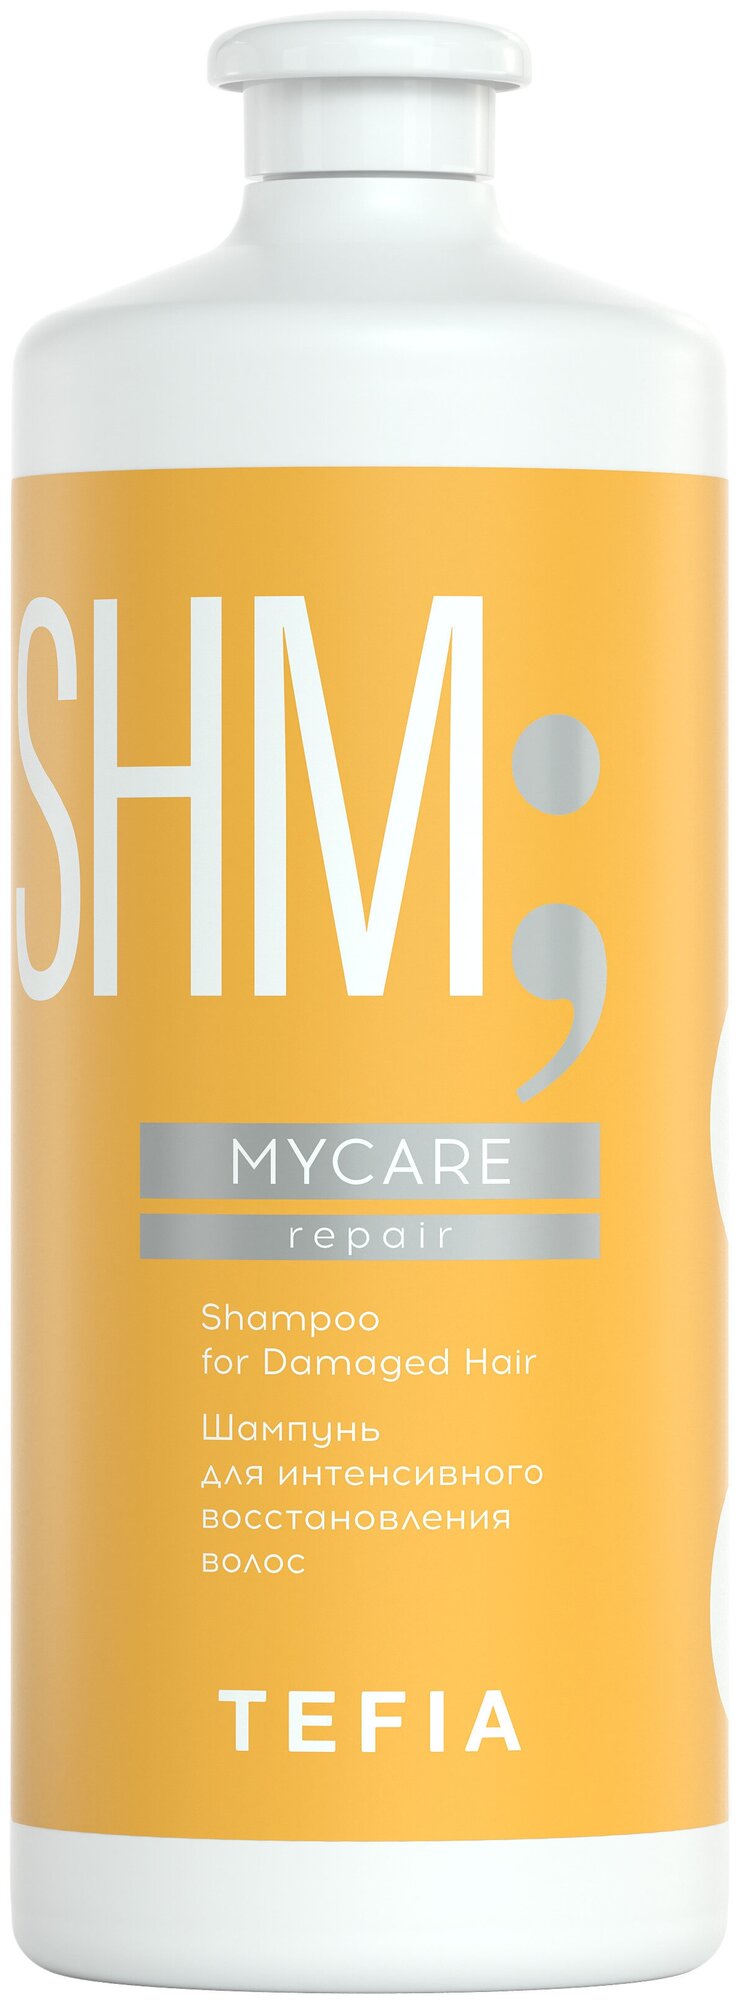 Tefia шампунь SHM MyCare Repair for Damaged Hair